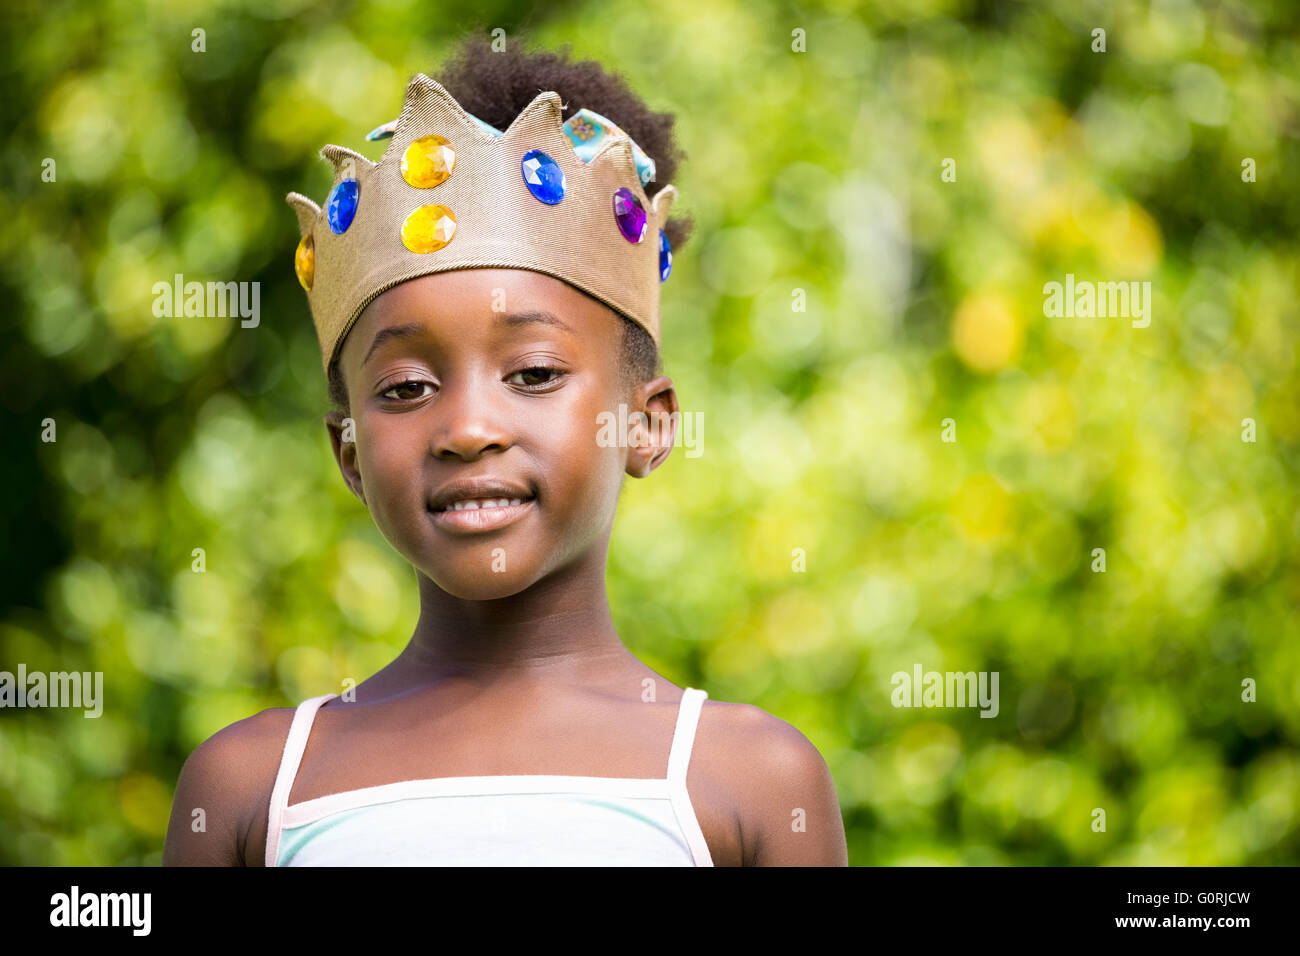 Portrait d'une jeune fille de race mixte souriant et portant une couronne Banque D'Images